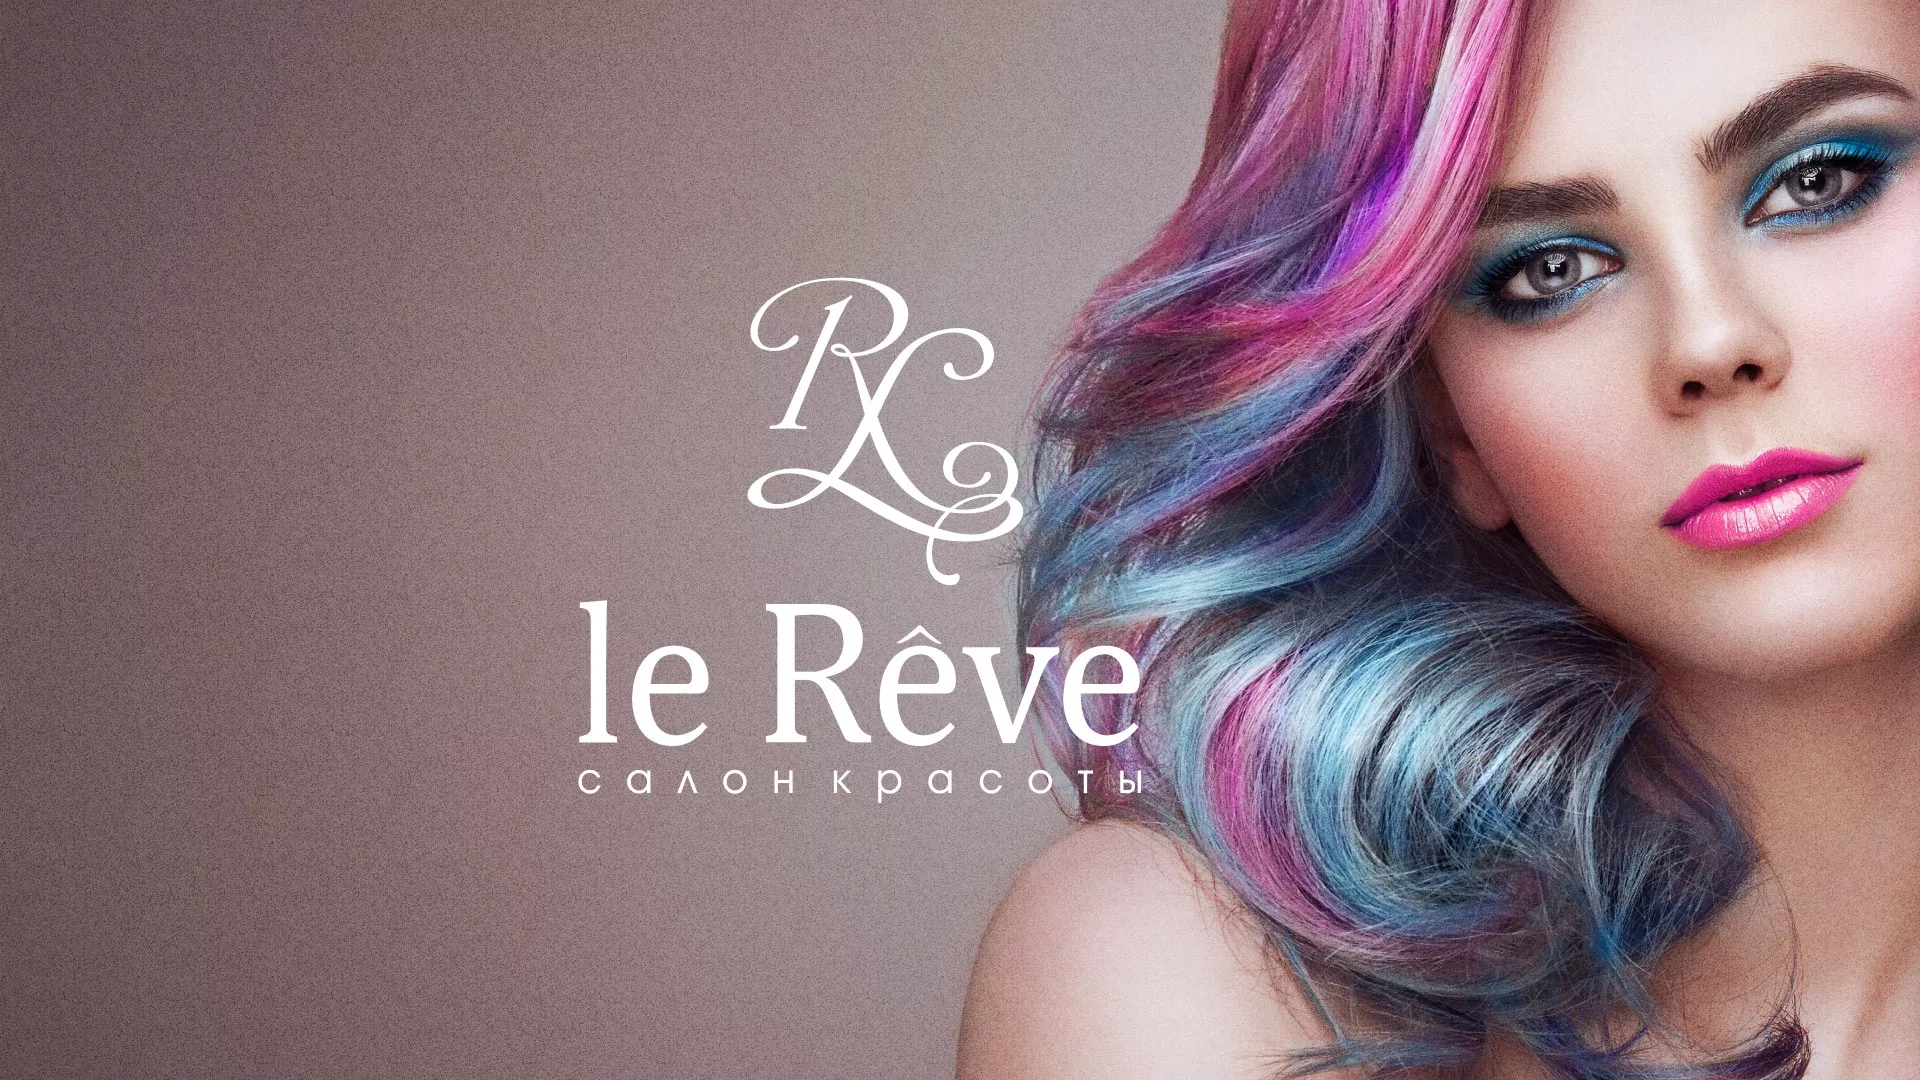 Создание сайта для салона красоты «Le Reve» в Любани